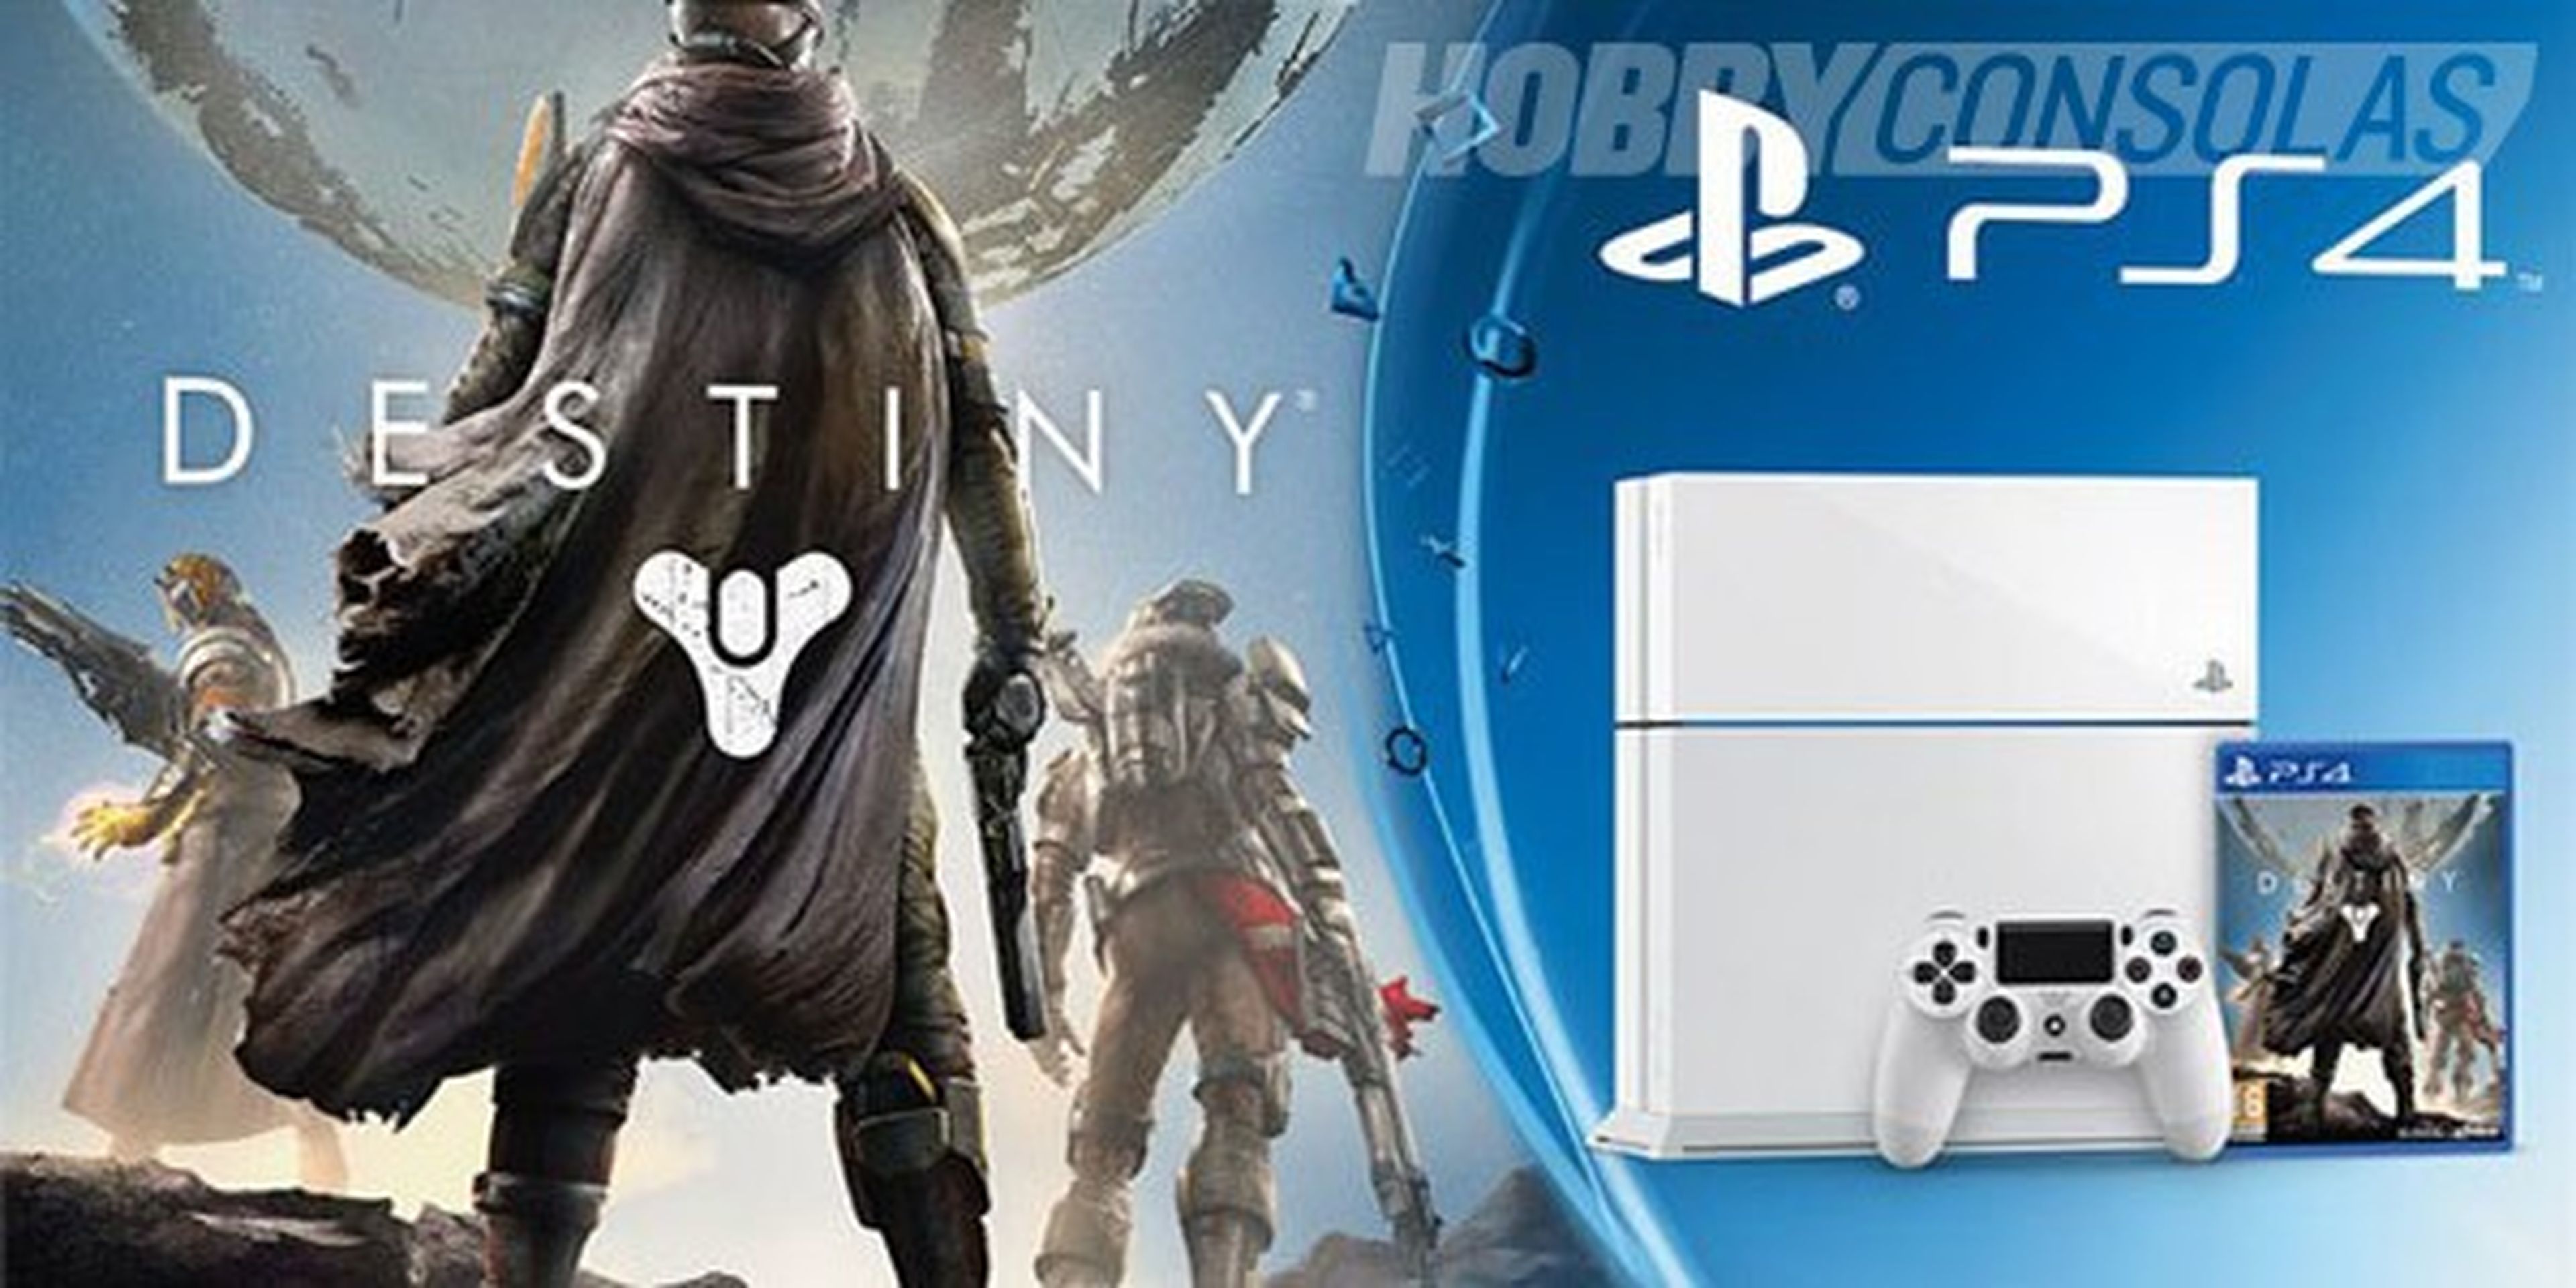 Las ventas de PS4 se triplican en Reino Unido gracias a Destiny